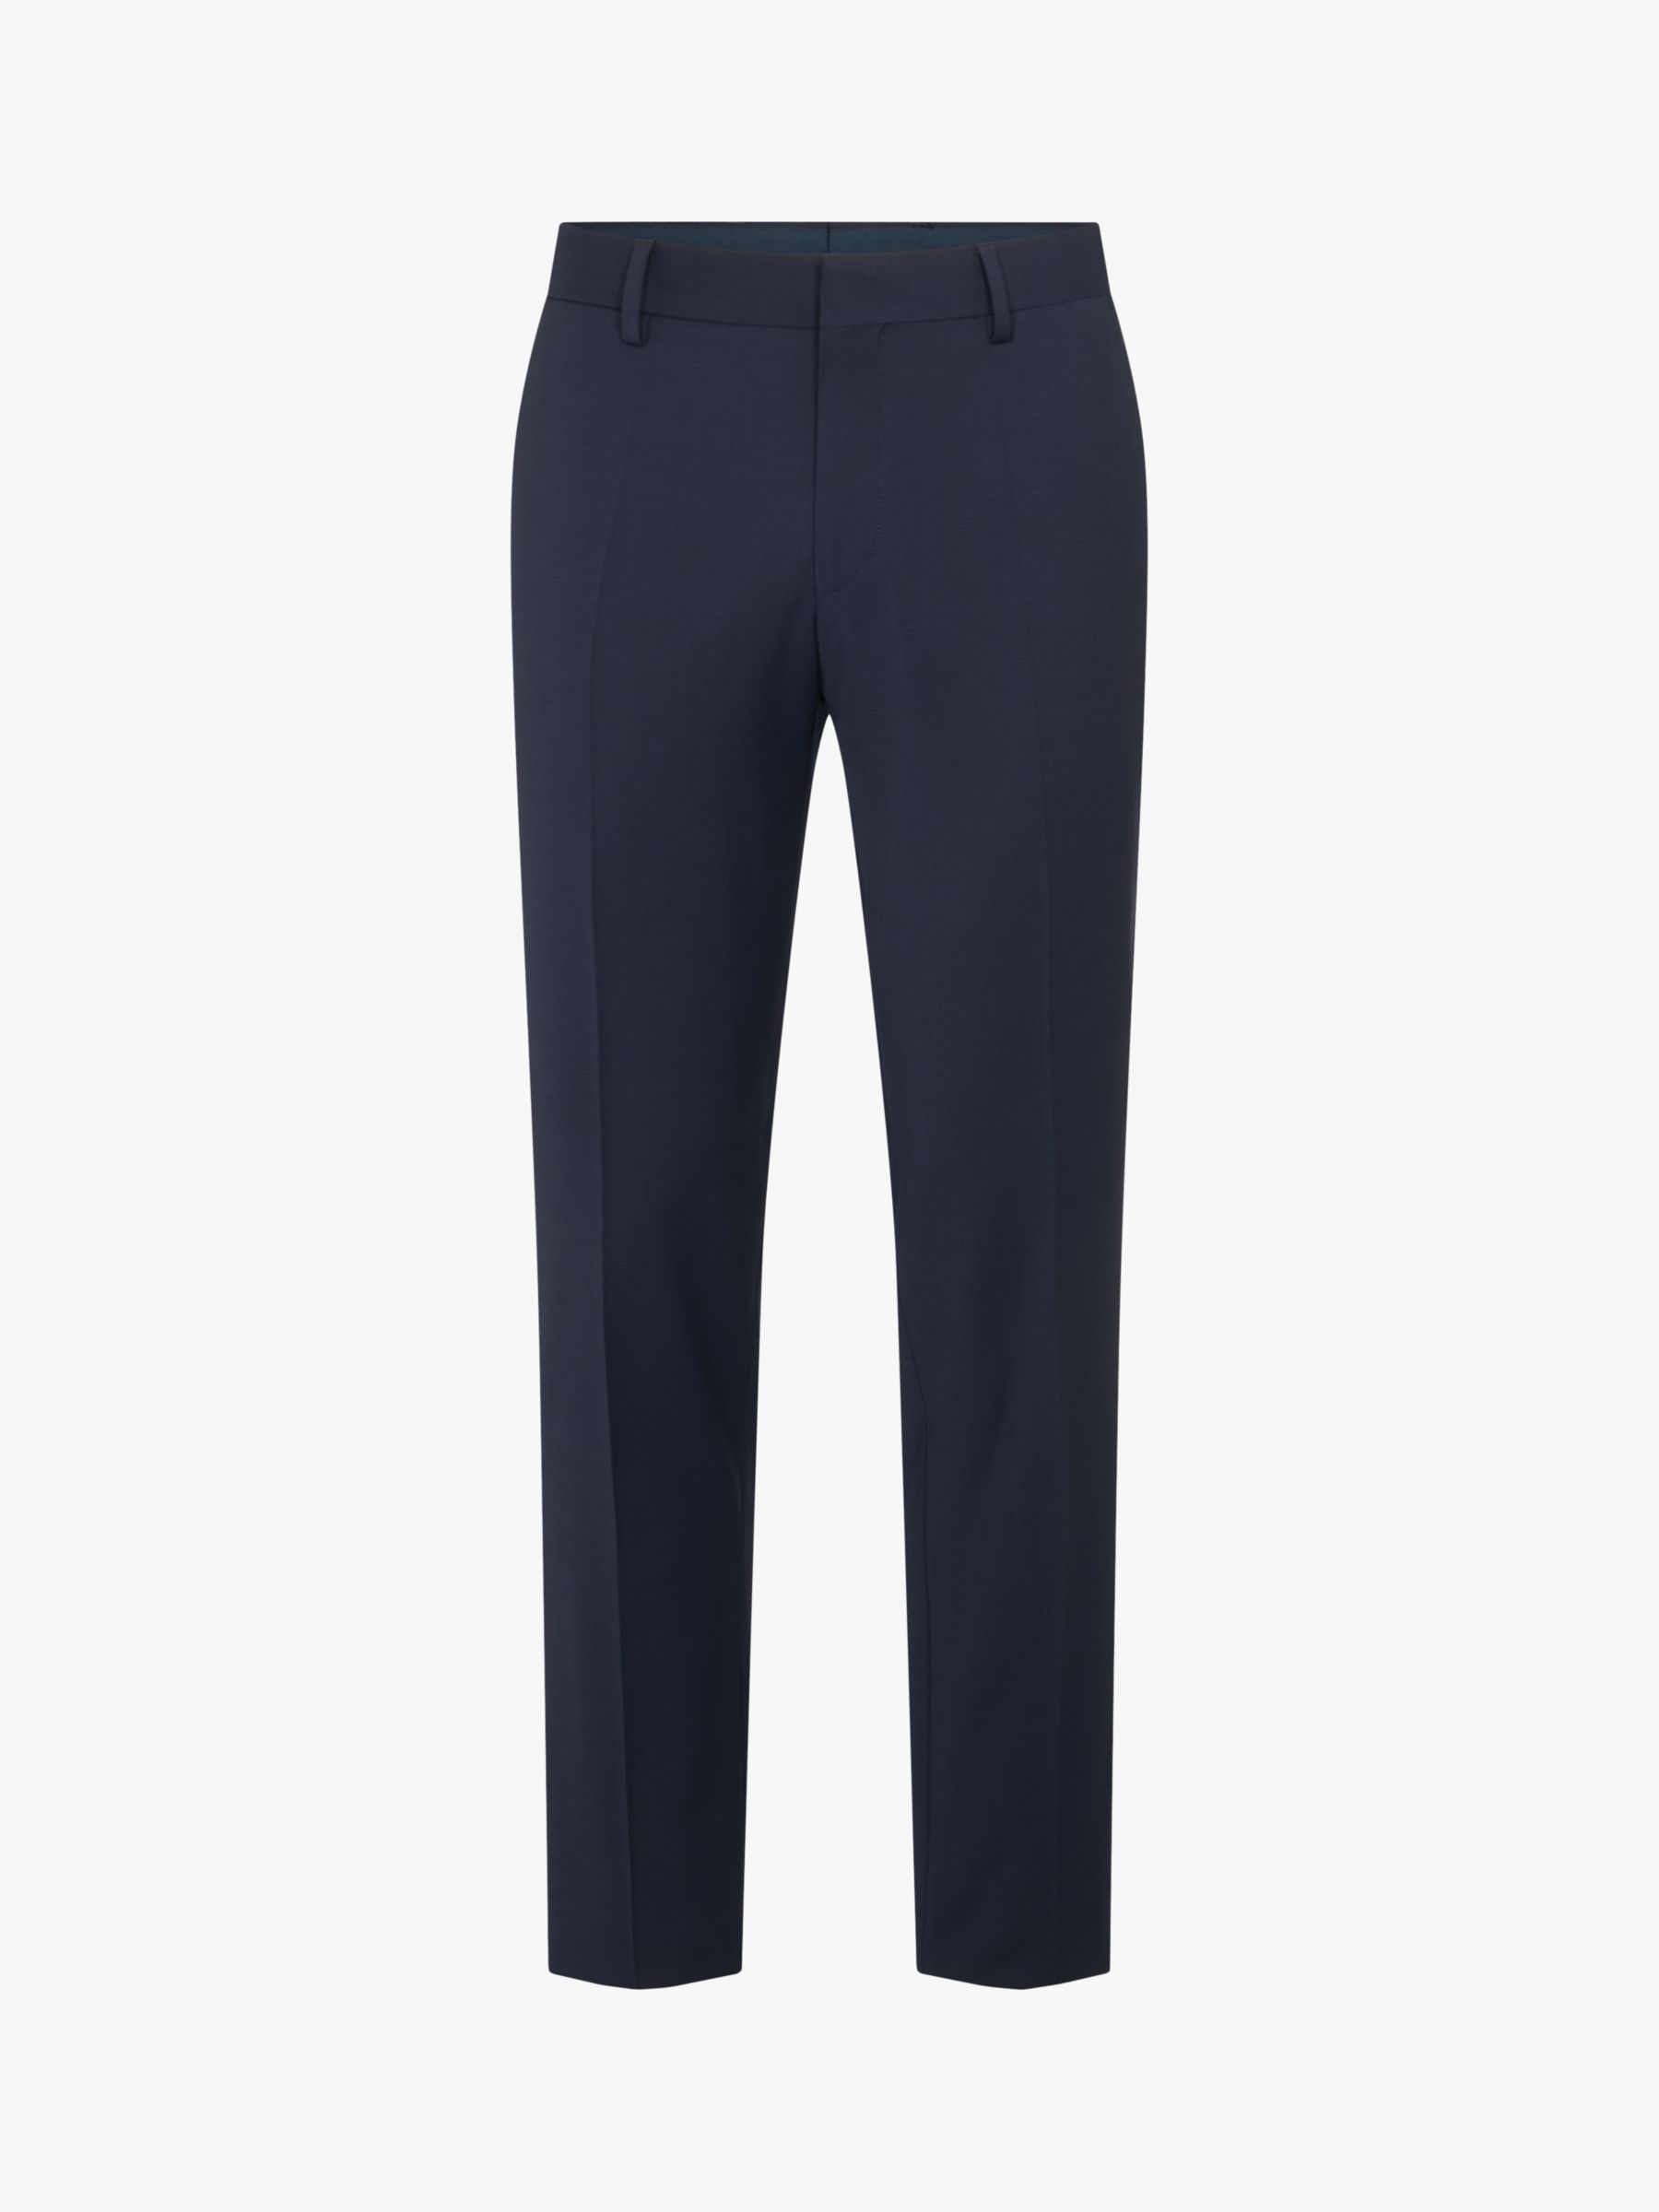 HUGO Genius Virgin Wool Blend Slim Fit Suit Trousers, Dark Blue, 30R